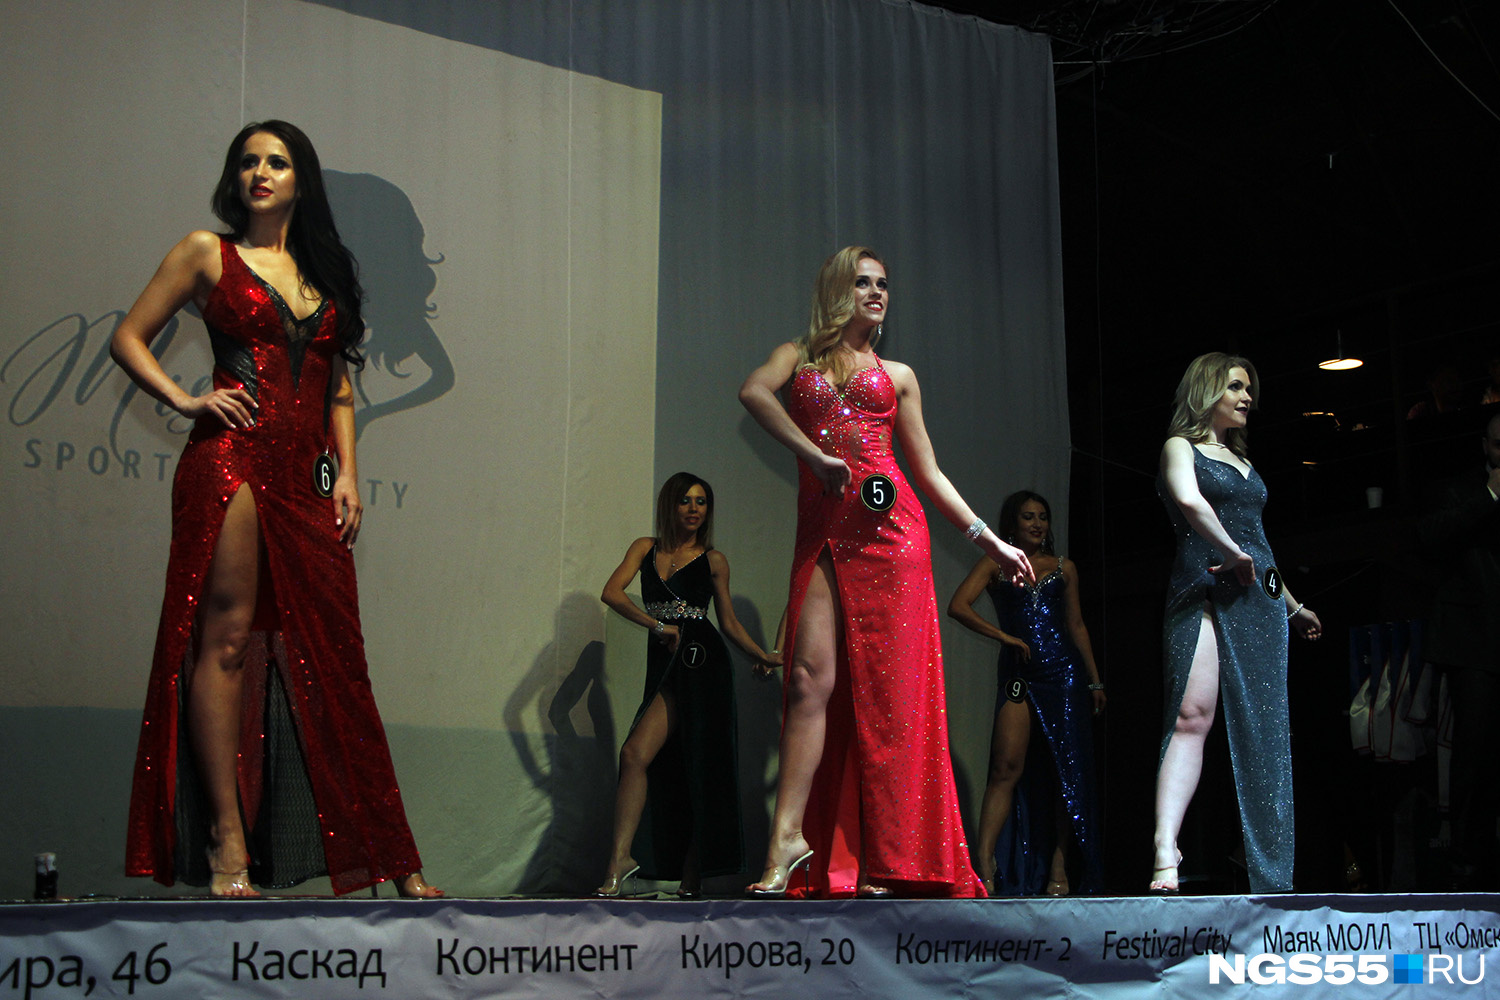 Анна Черная (в центре) во время сравнений в вечерних платьях